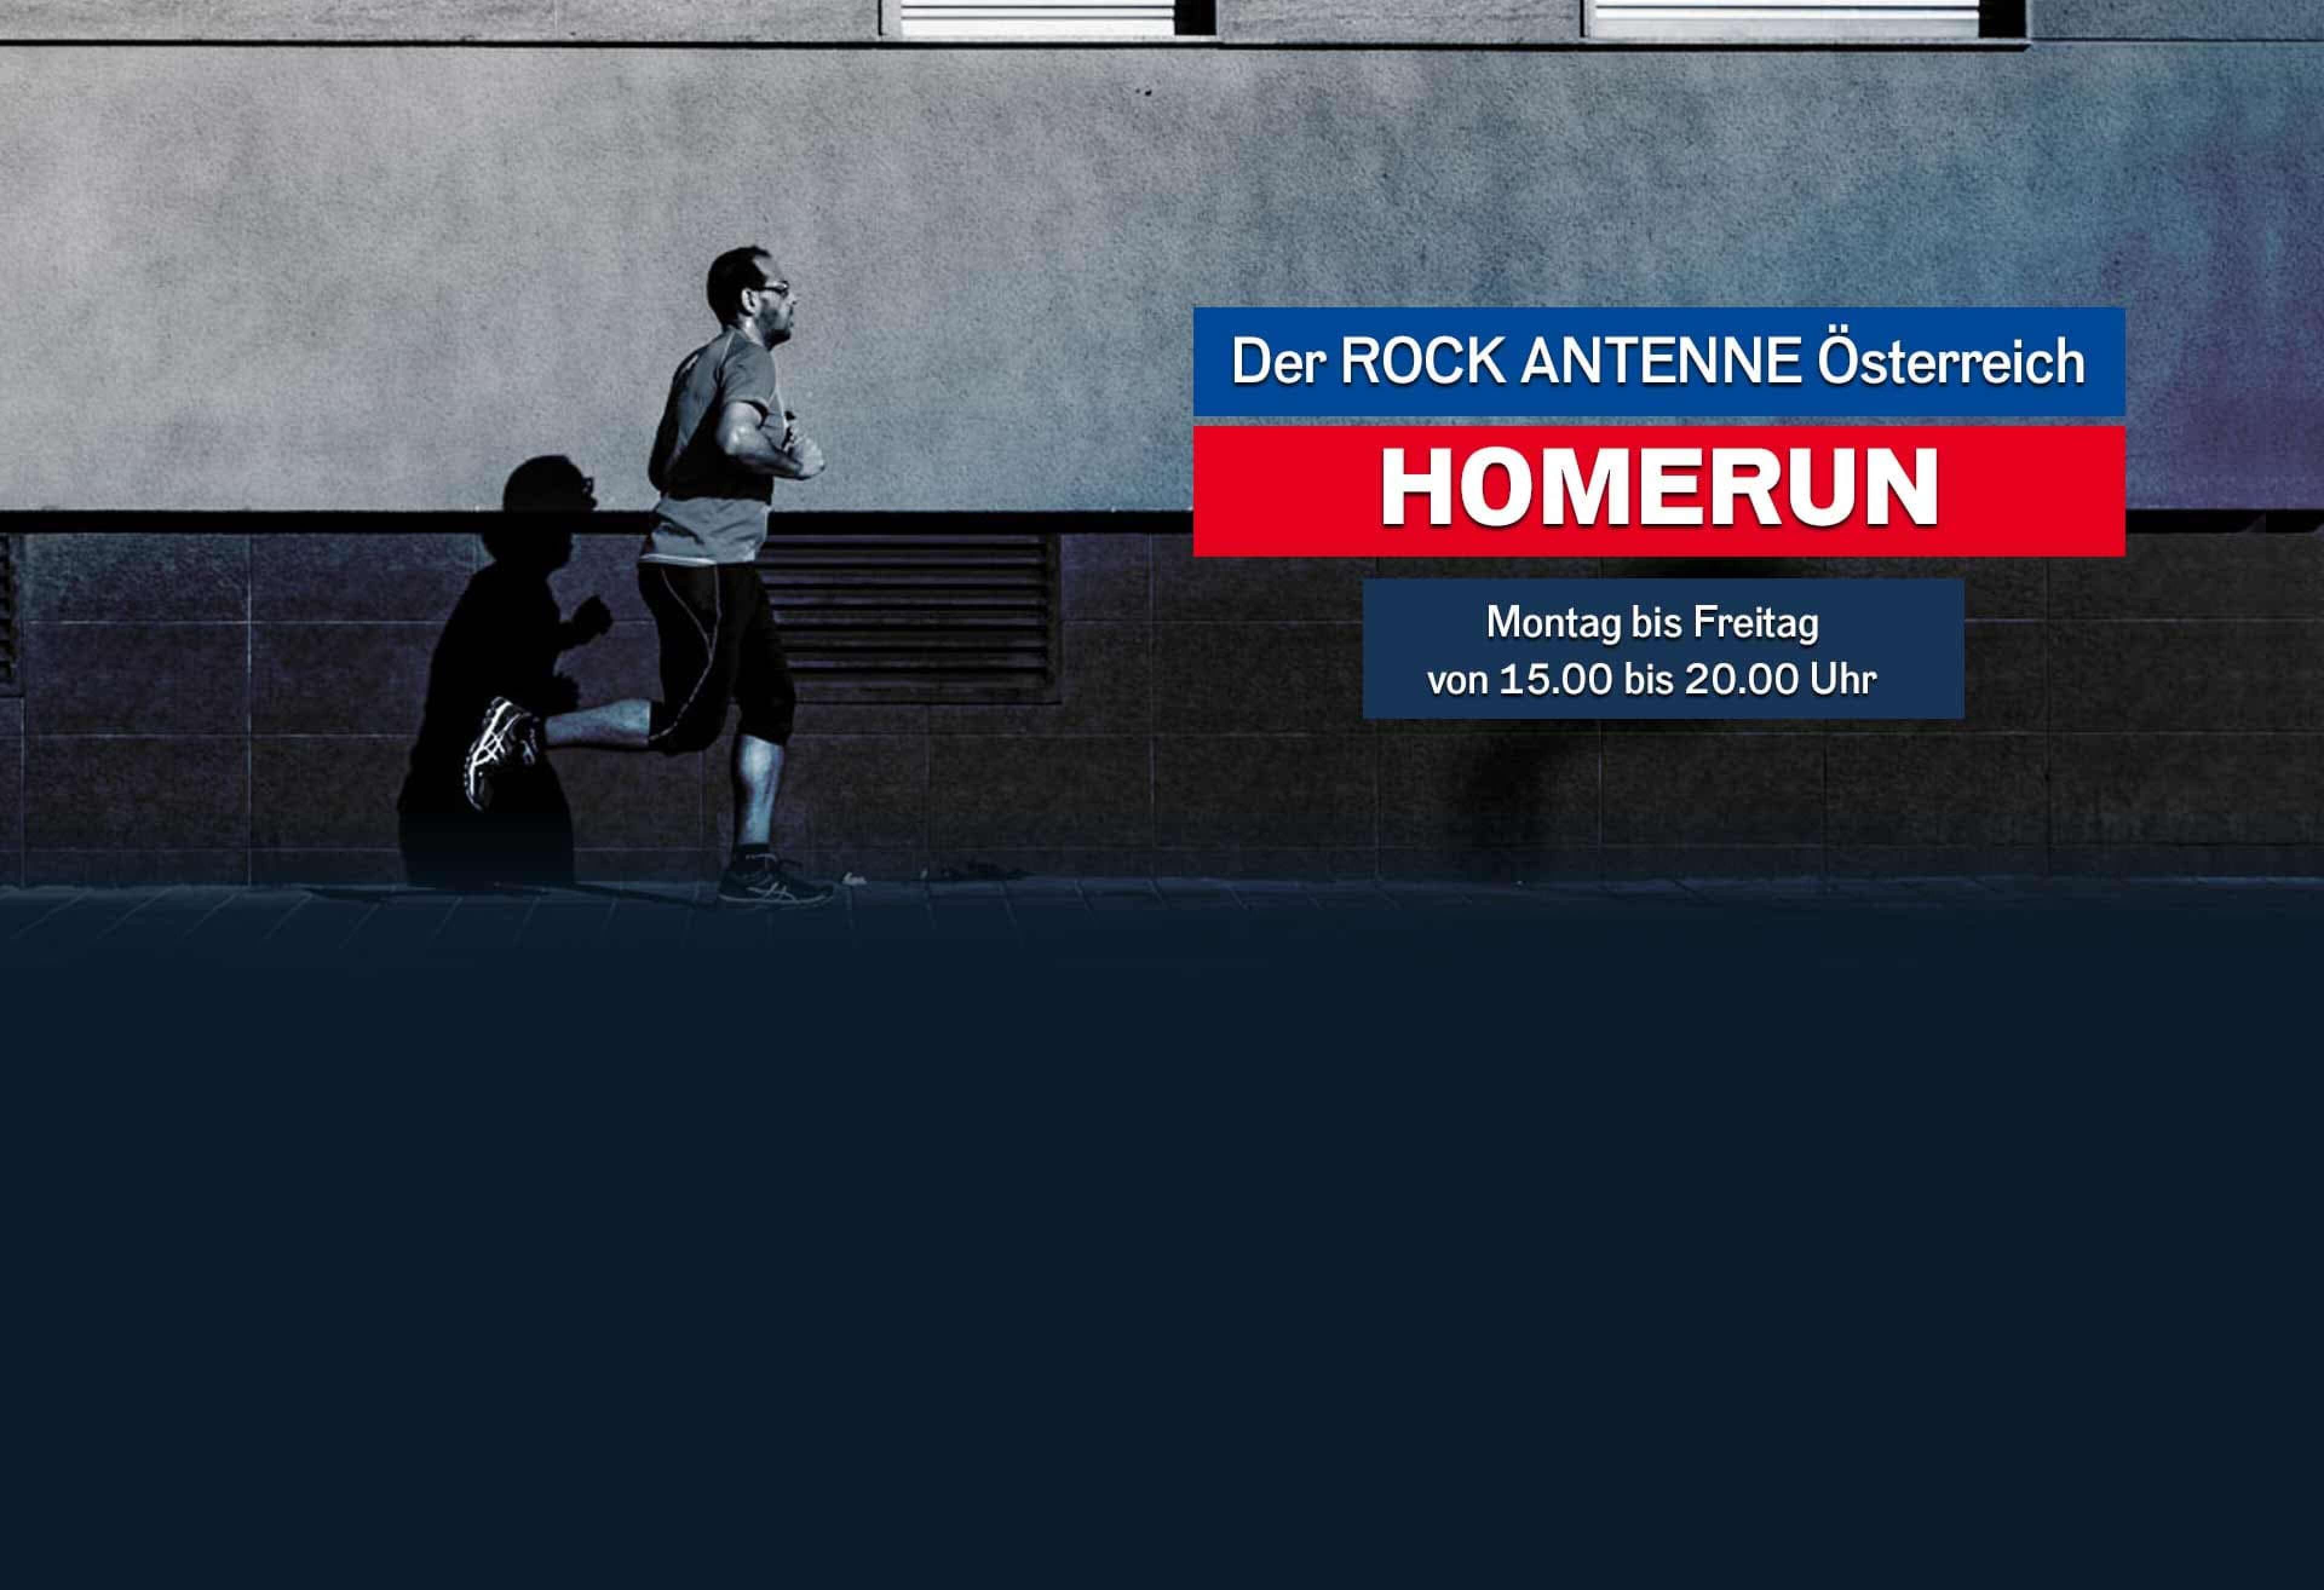 Bild eines Mannes, der an einer Hauswand entlang joggt, Text "Der ROCK ANTENNE Österreich Homerun, Montag bis Freitag 15 bis 20 Uhr"